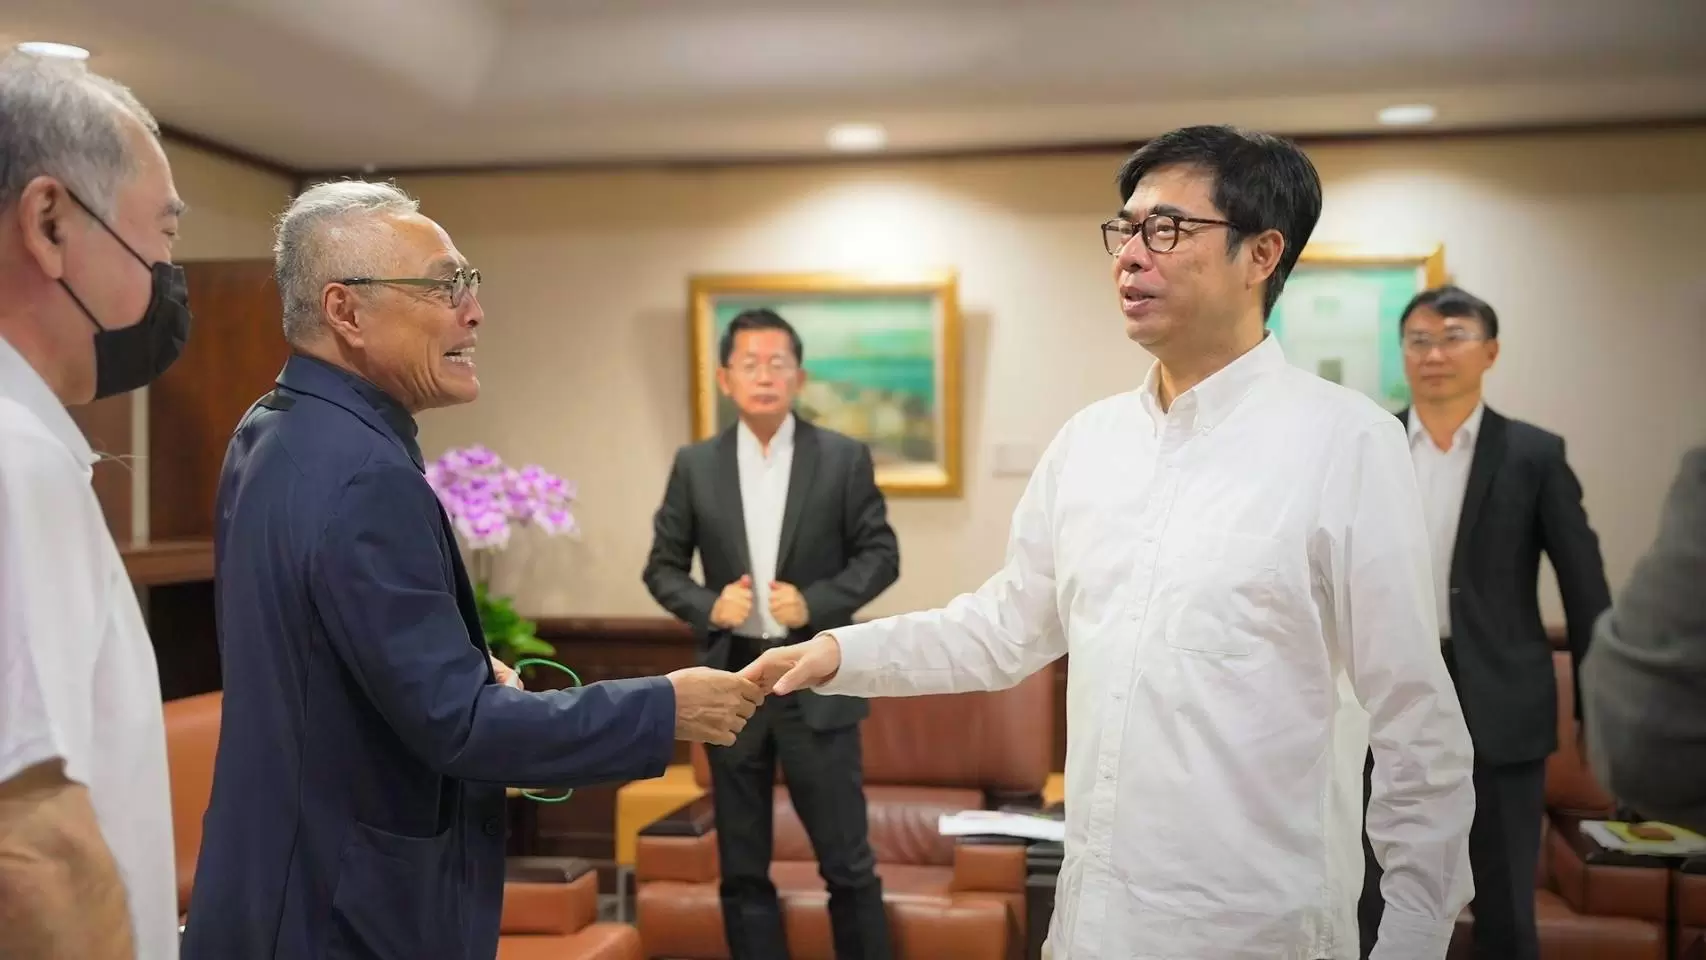 中華足協王麟祥理事長(左)與陳其邁市長相見歡。足協提供